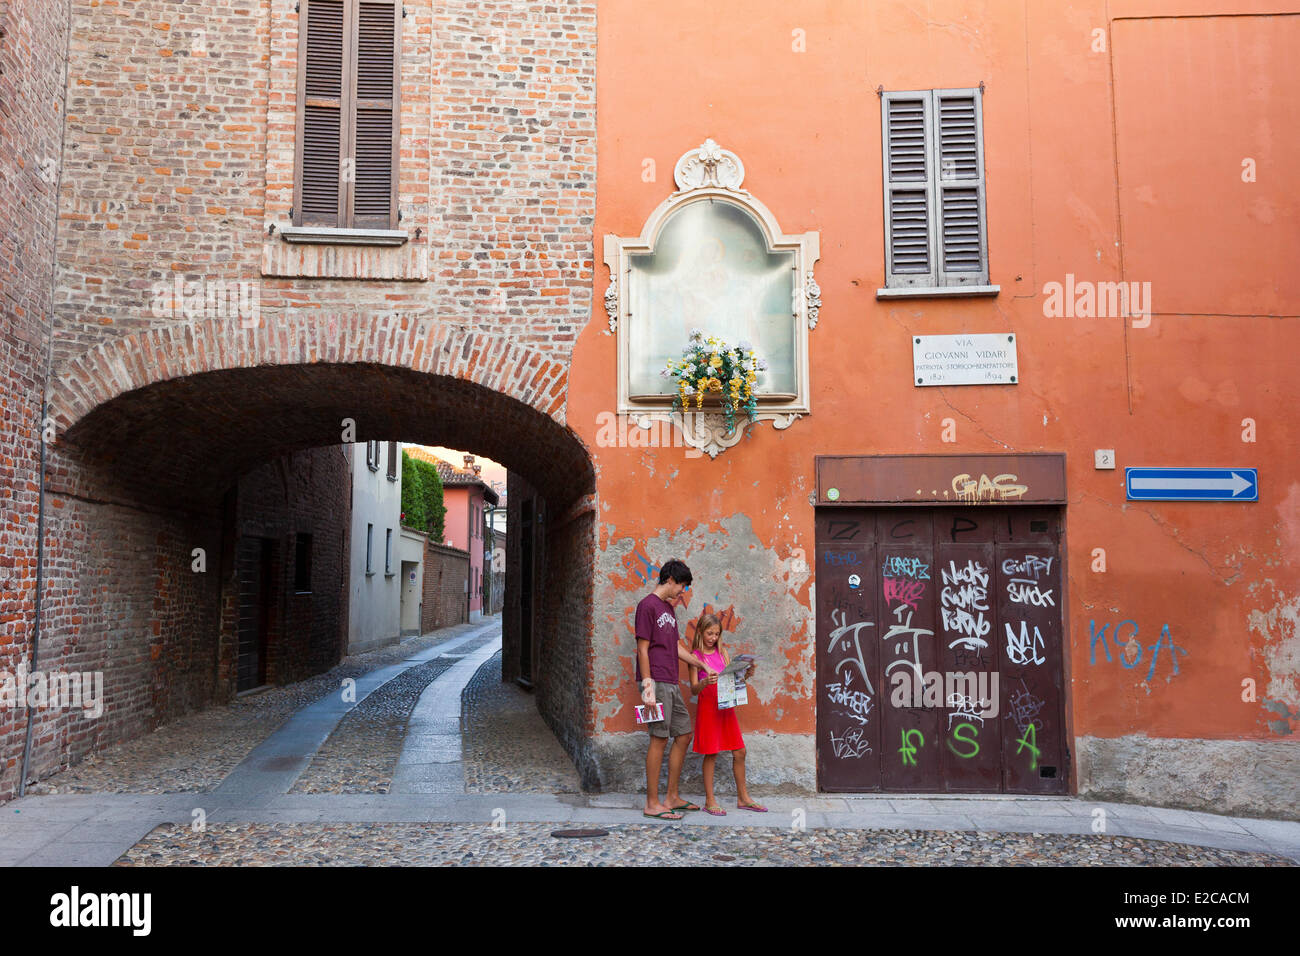 Italy, Lombardy, Pavia, the historic city center Stock Photo